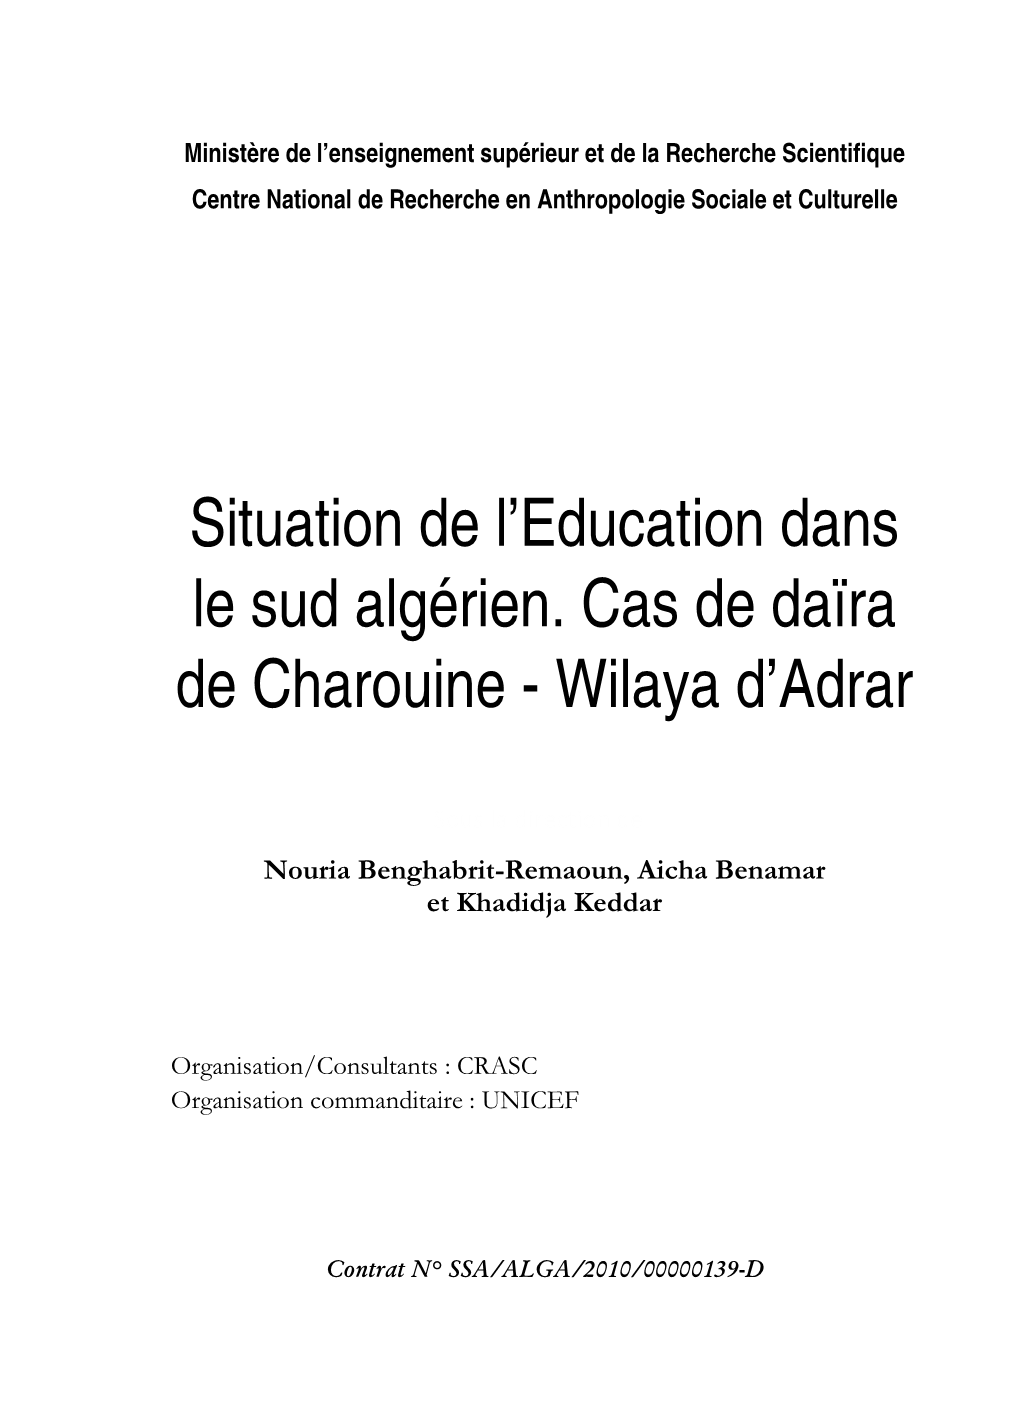 Situation De L'education Dans La Daïra De Charouine